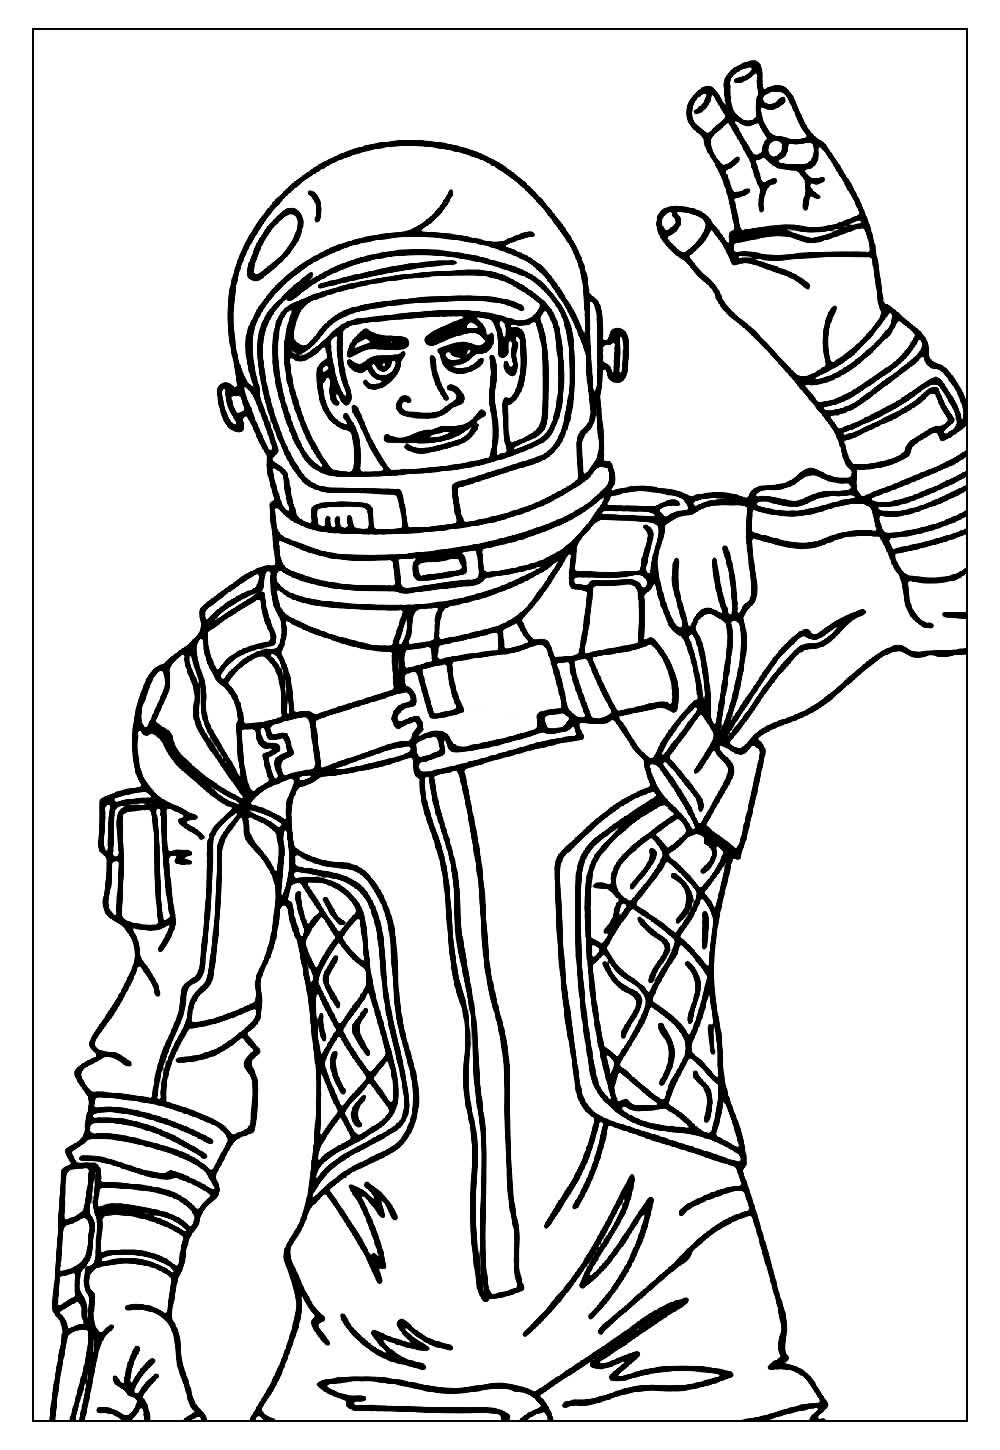 Imagem de Astronauta para pintar